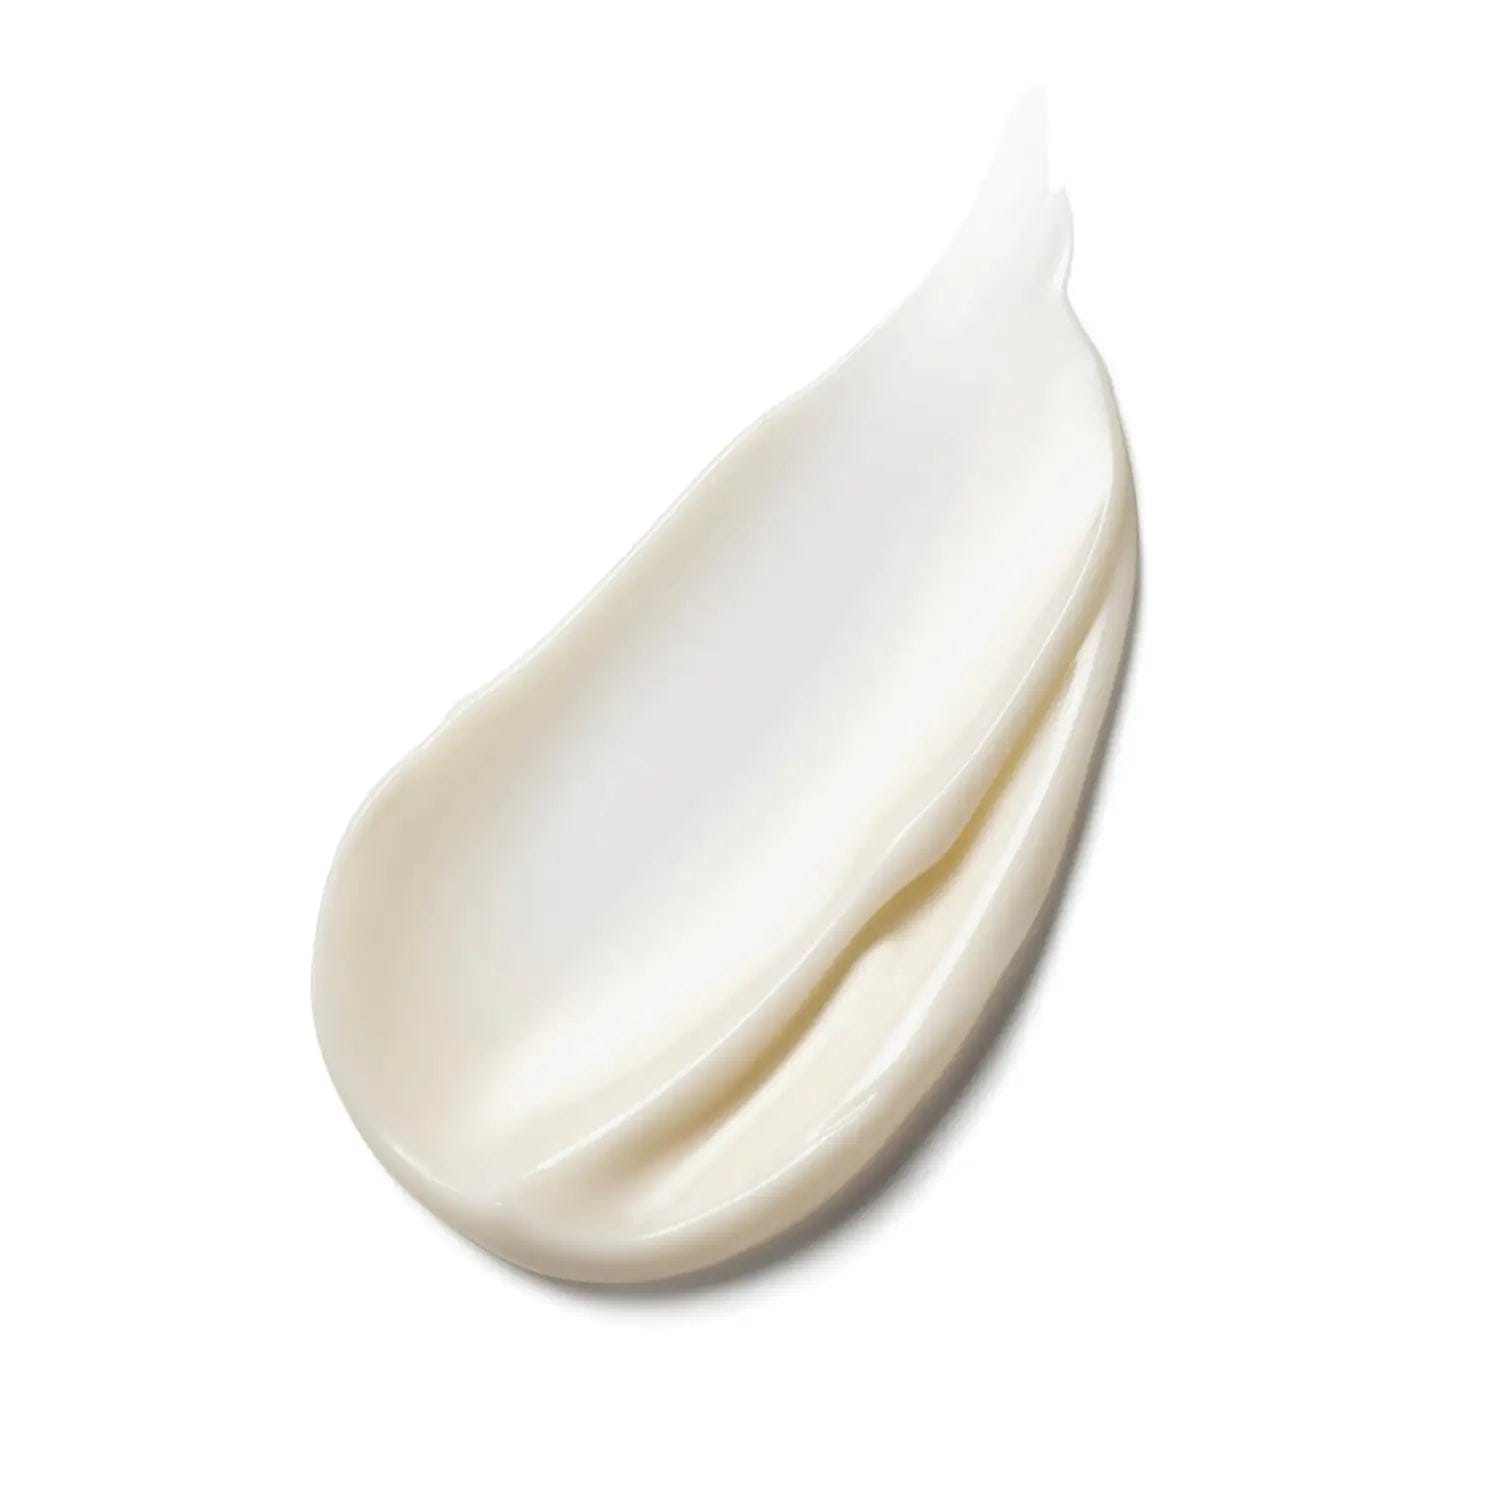 Estée Lauder Nutritious Melting Soft Crème / Mask 50ml